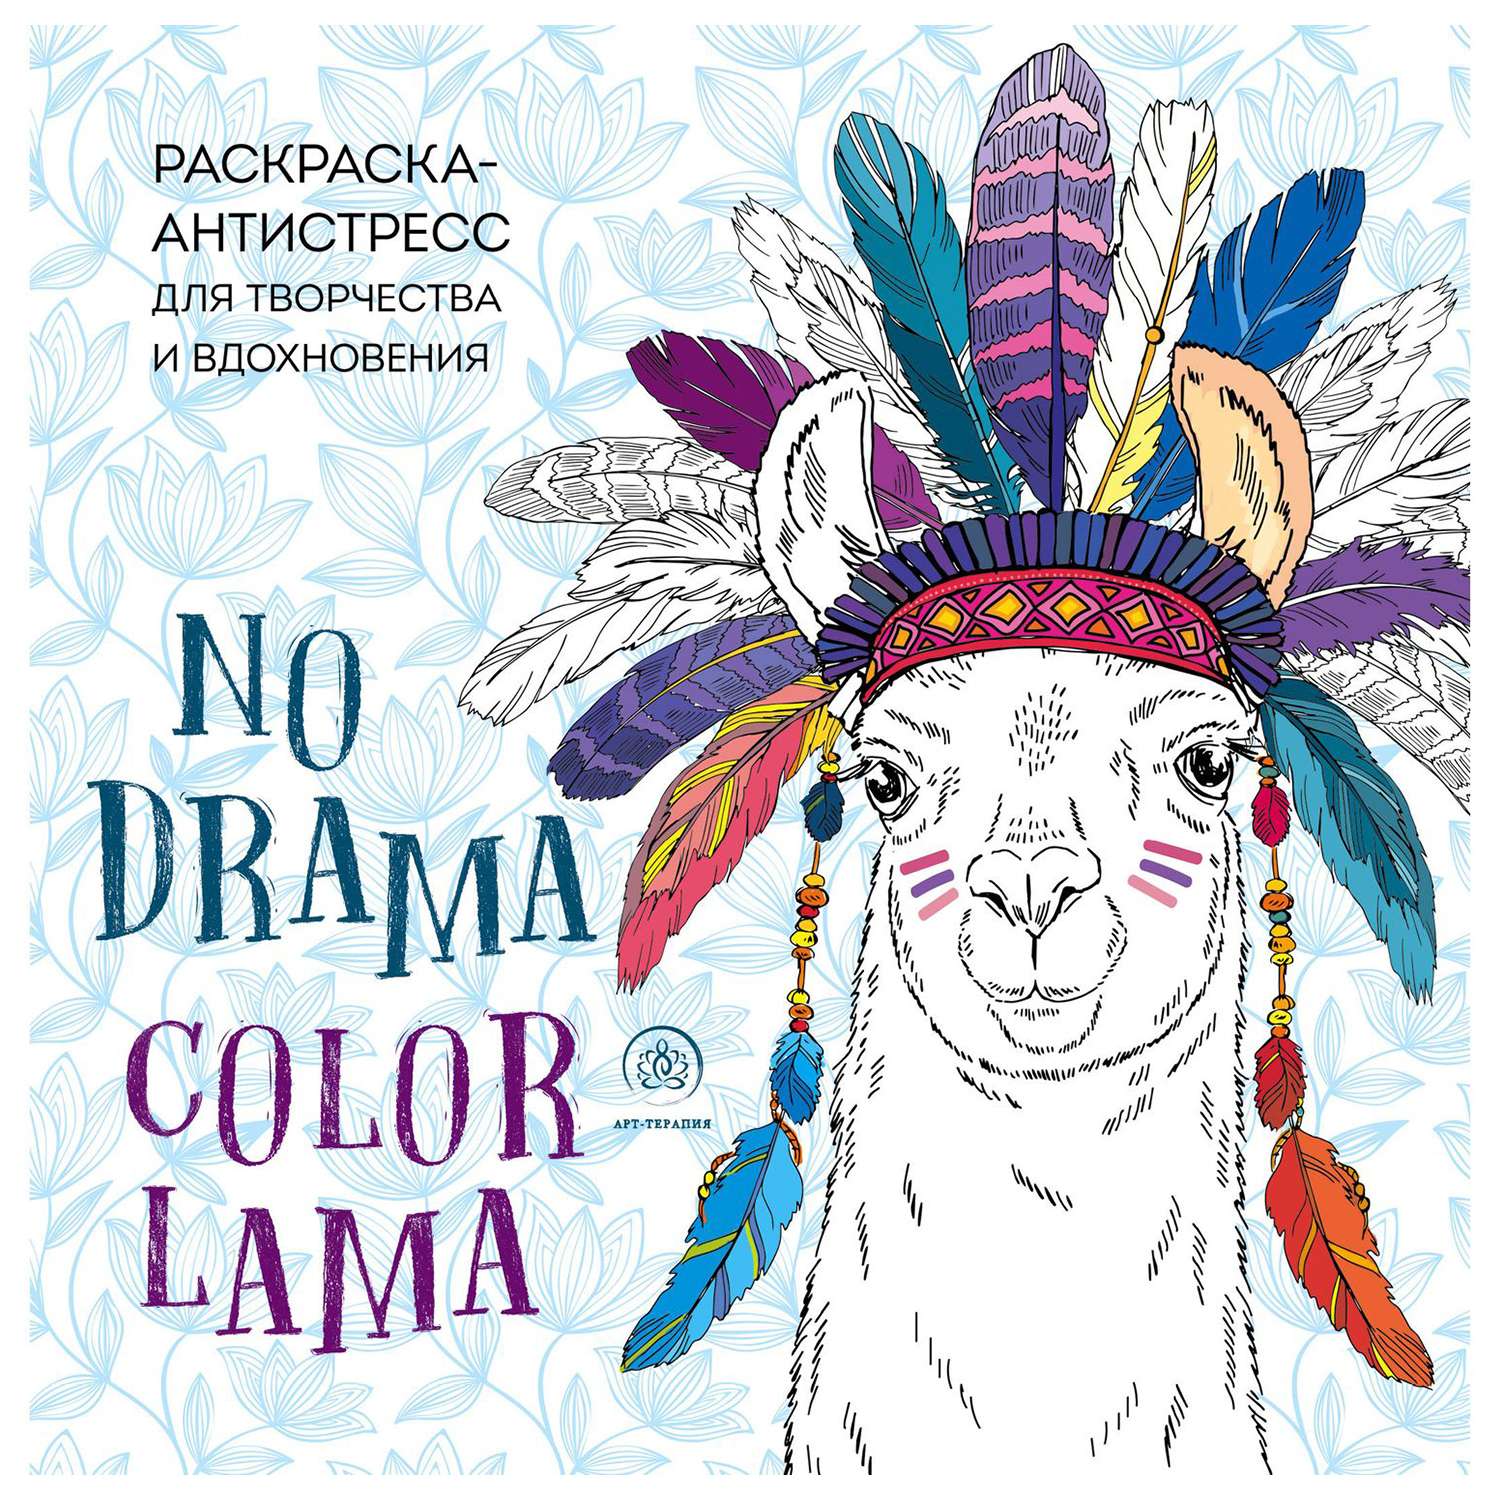 Раскраска Эксмо Ламы no drama-color lama Раскраска-антистресс для творчества и вдохновения - фото 1